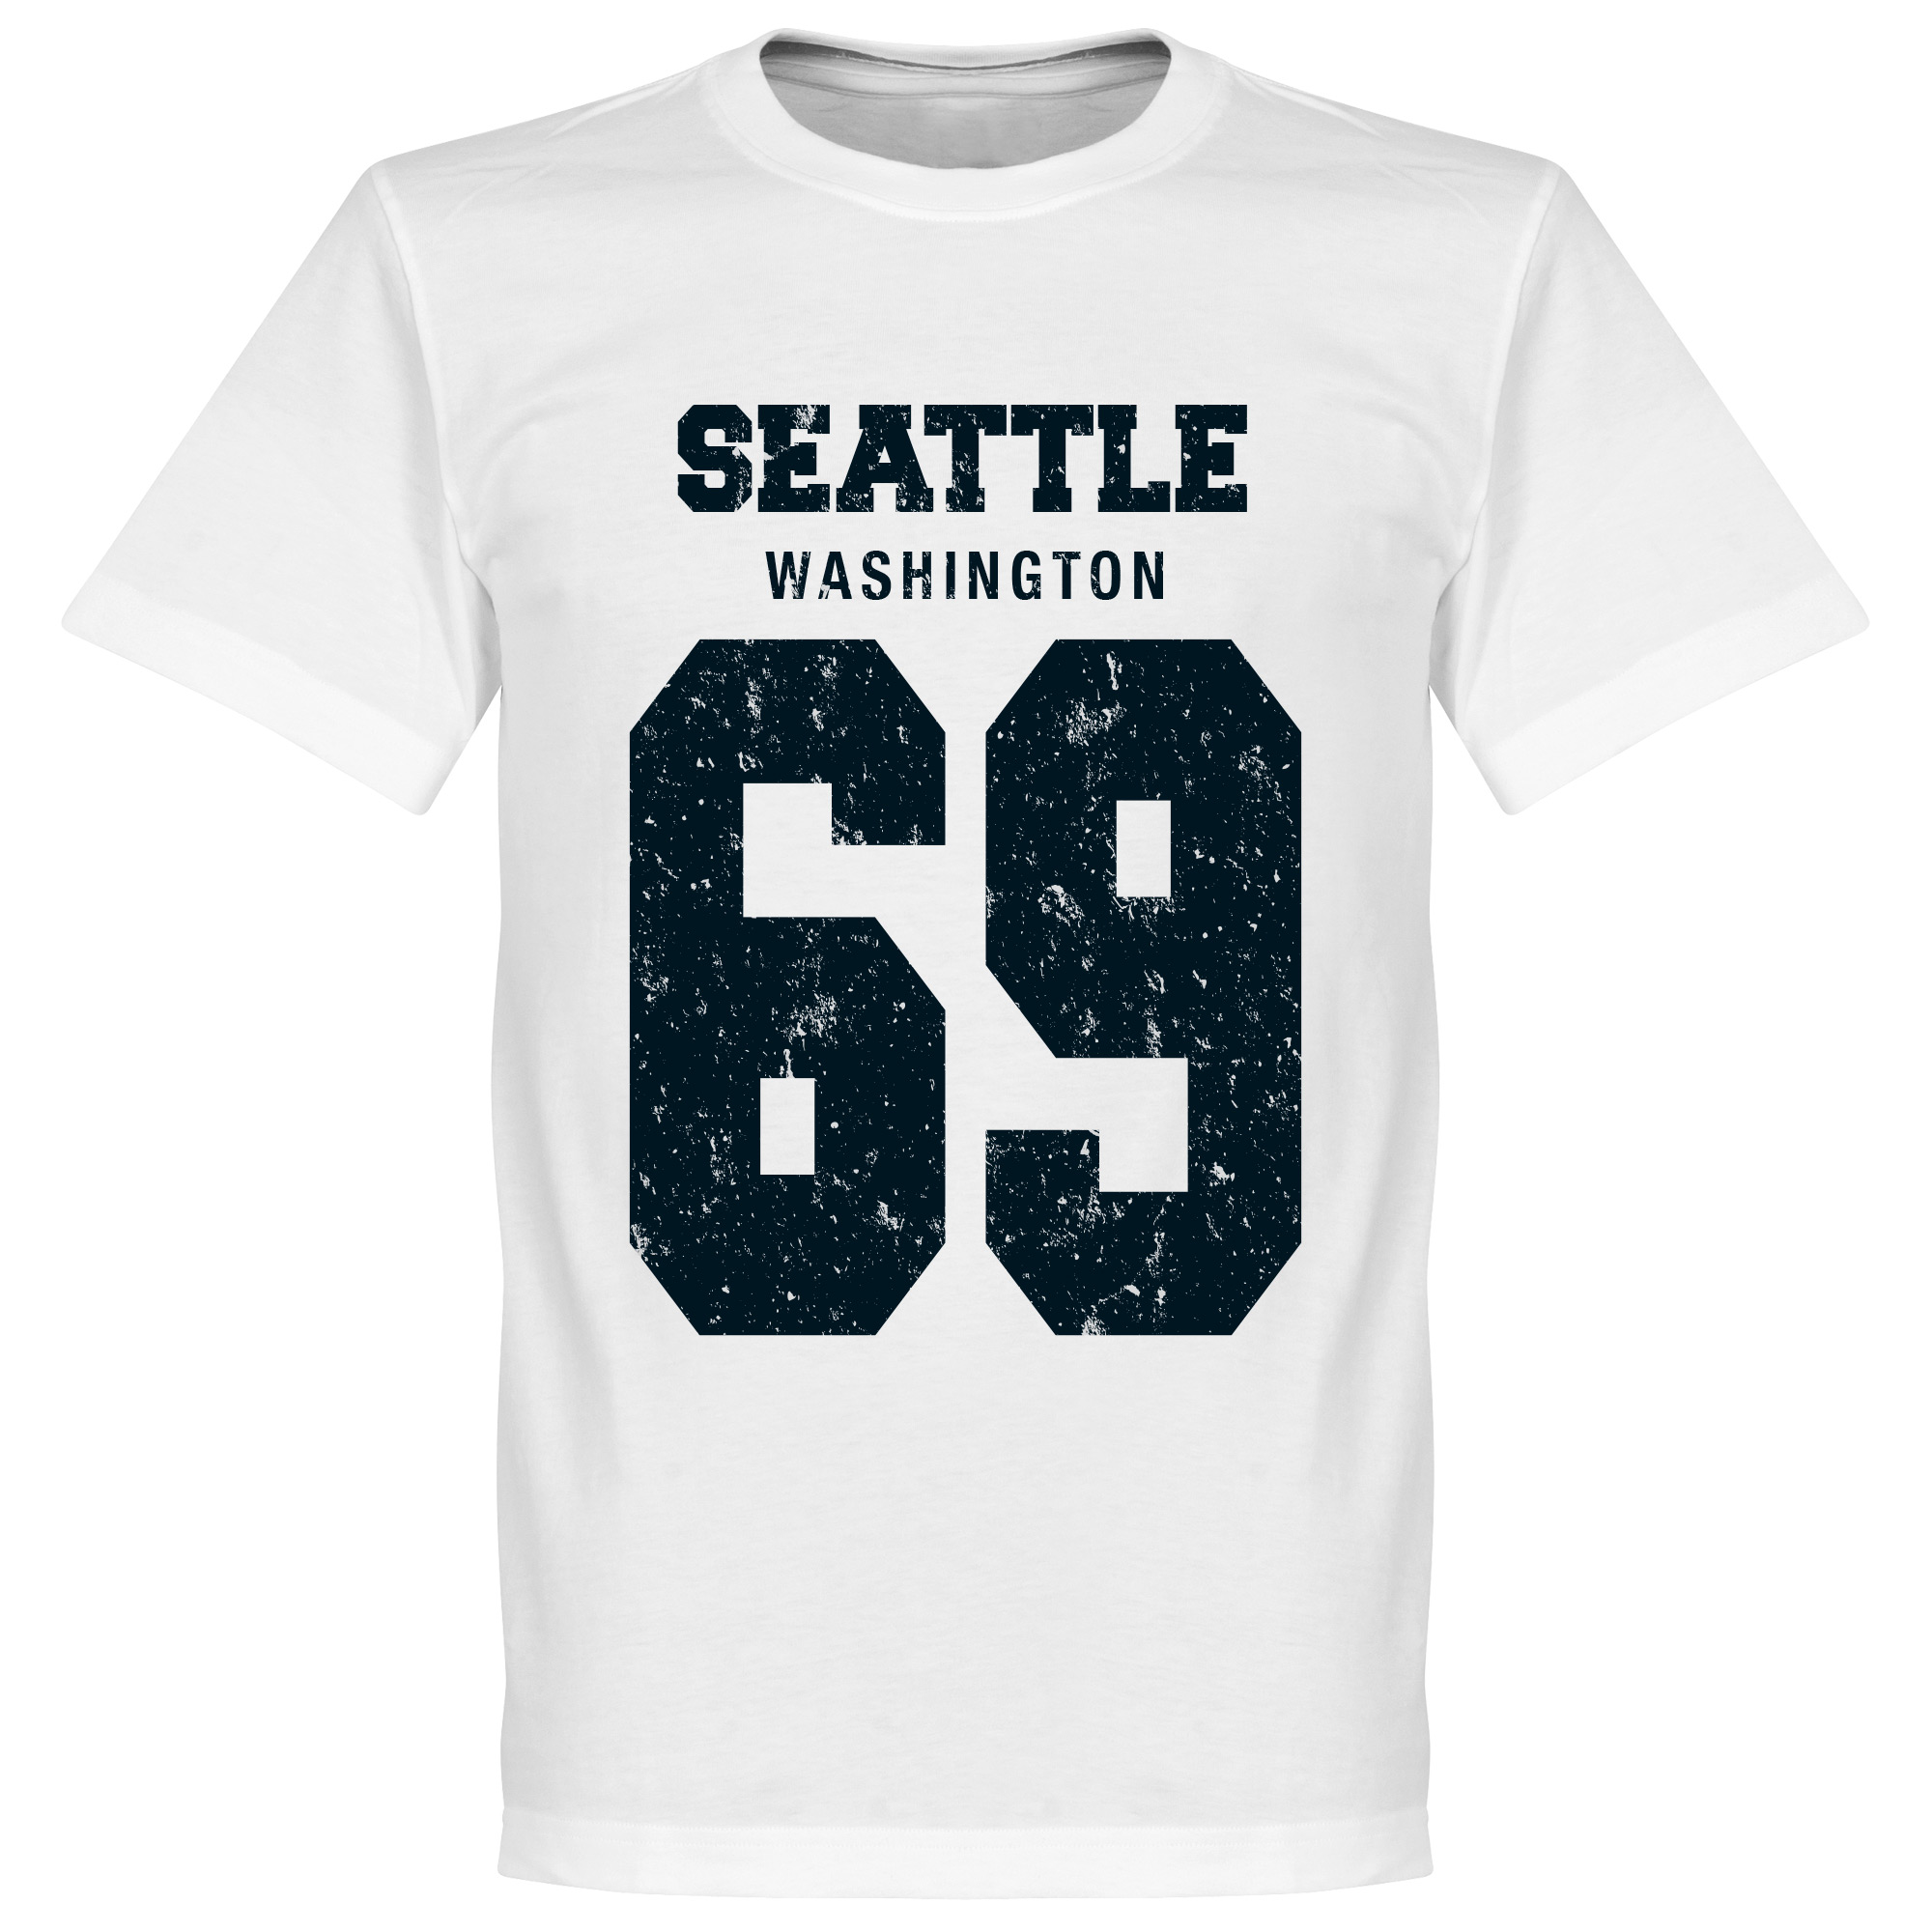 Seattle '69 T-Shirt Top Merken Winkel